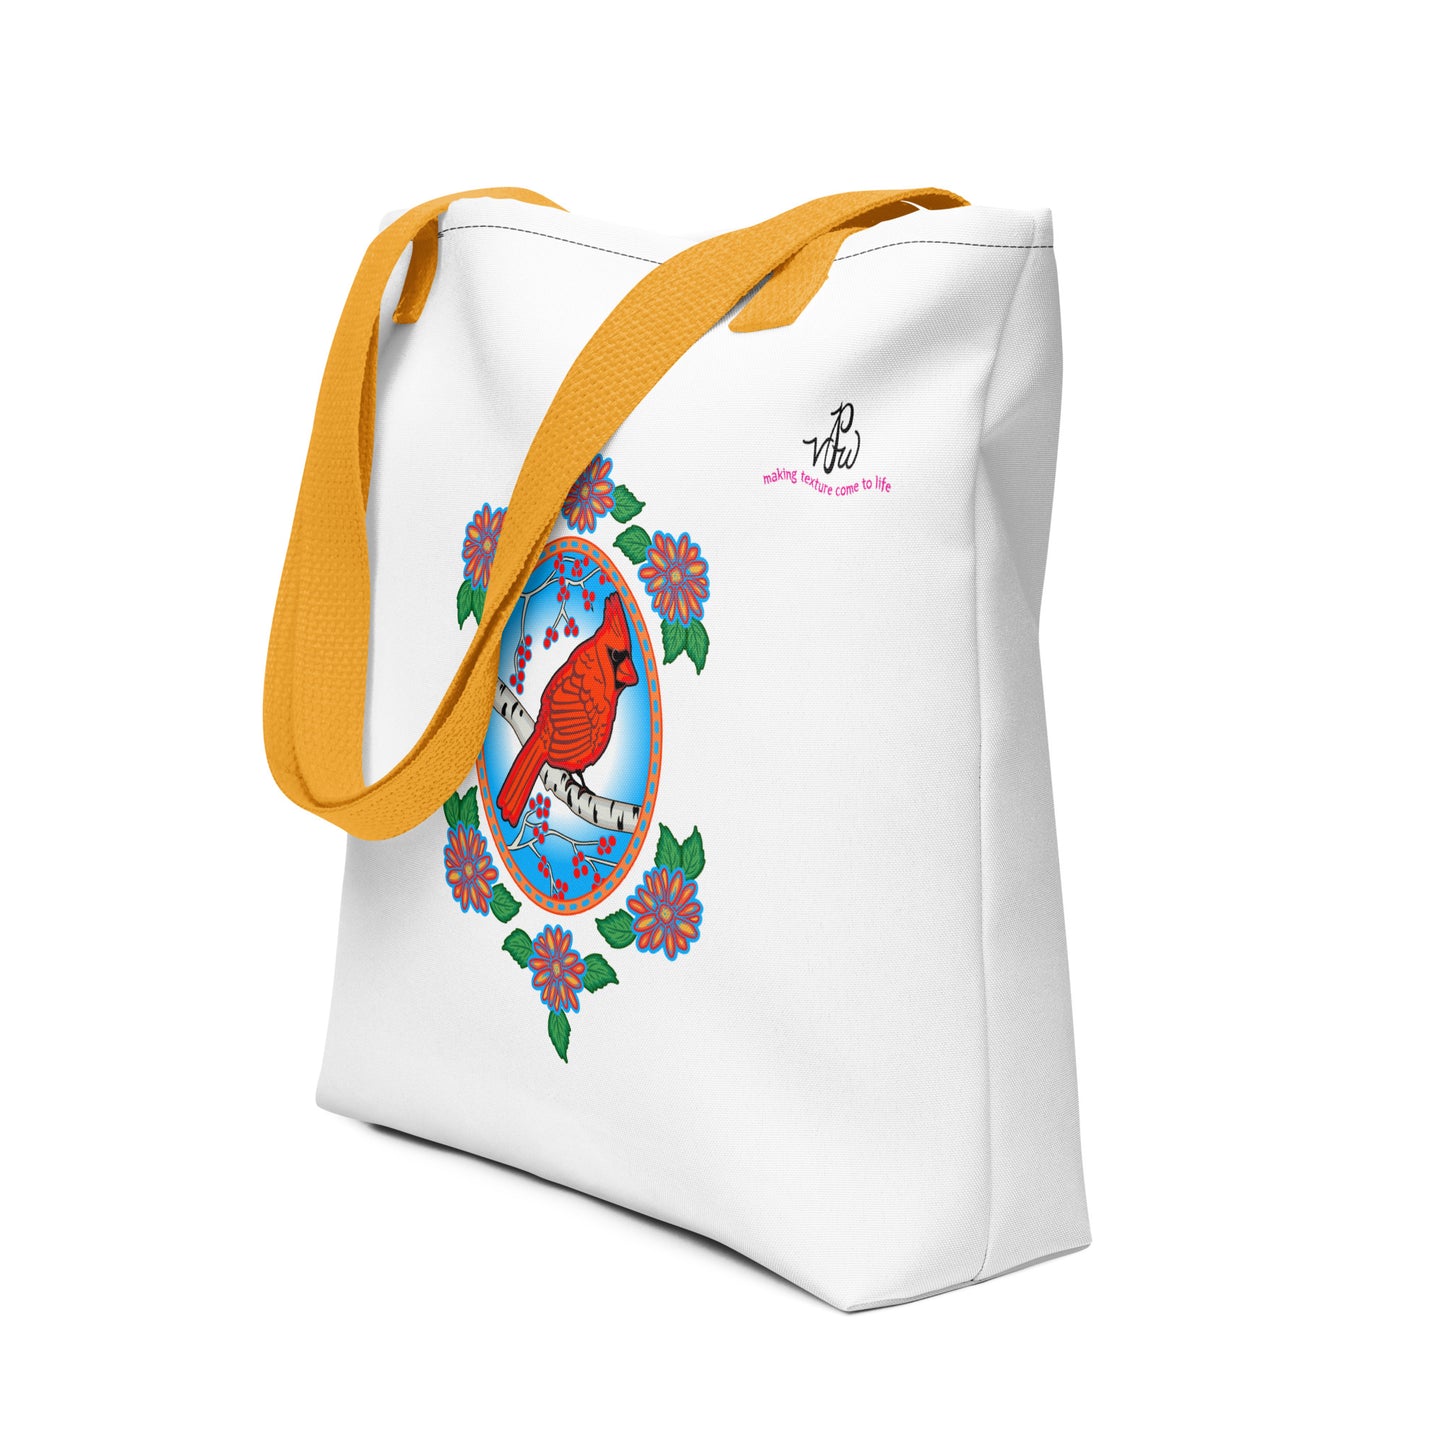 Floral Cardinal Tote bag